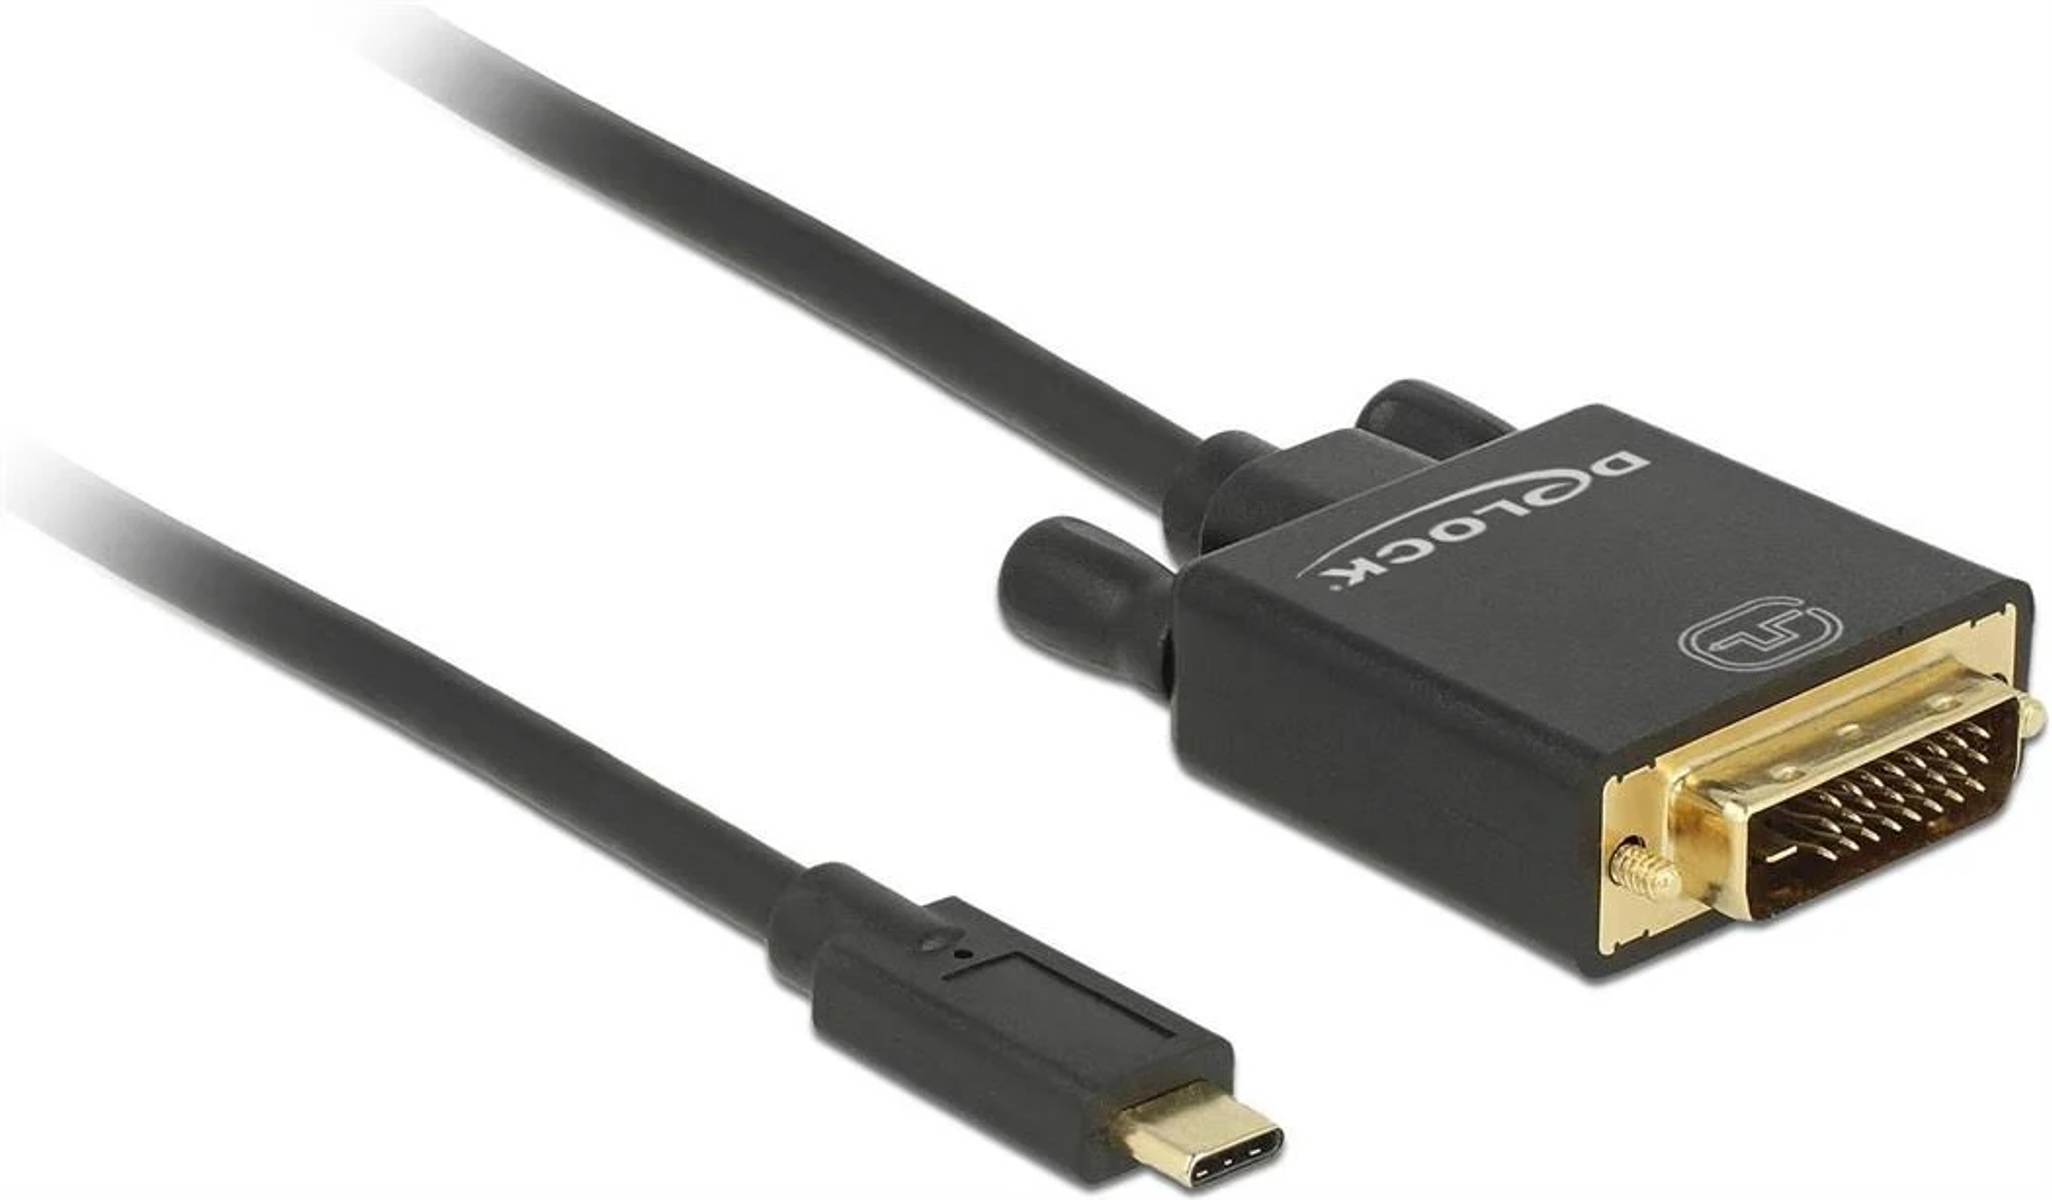 DELOCK DEO-85321 USB Kabel, Schwarz